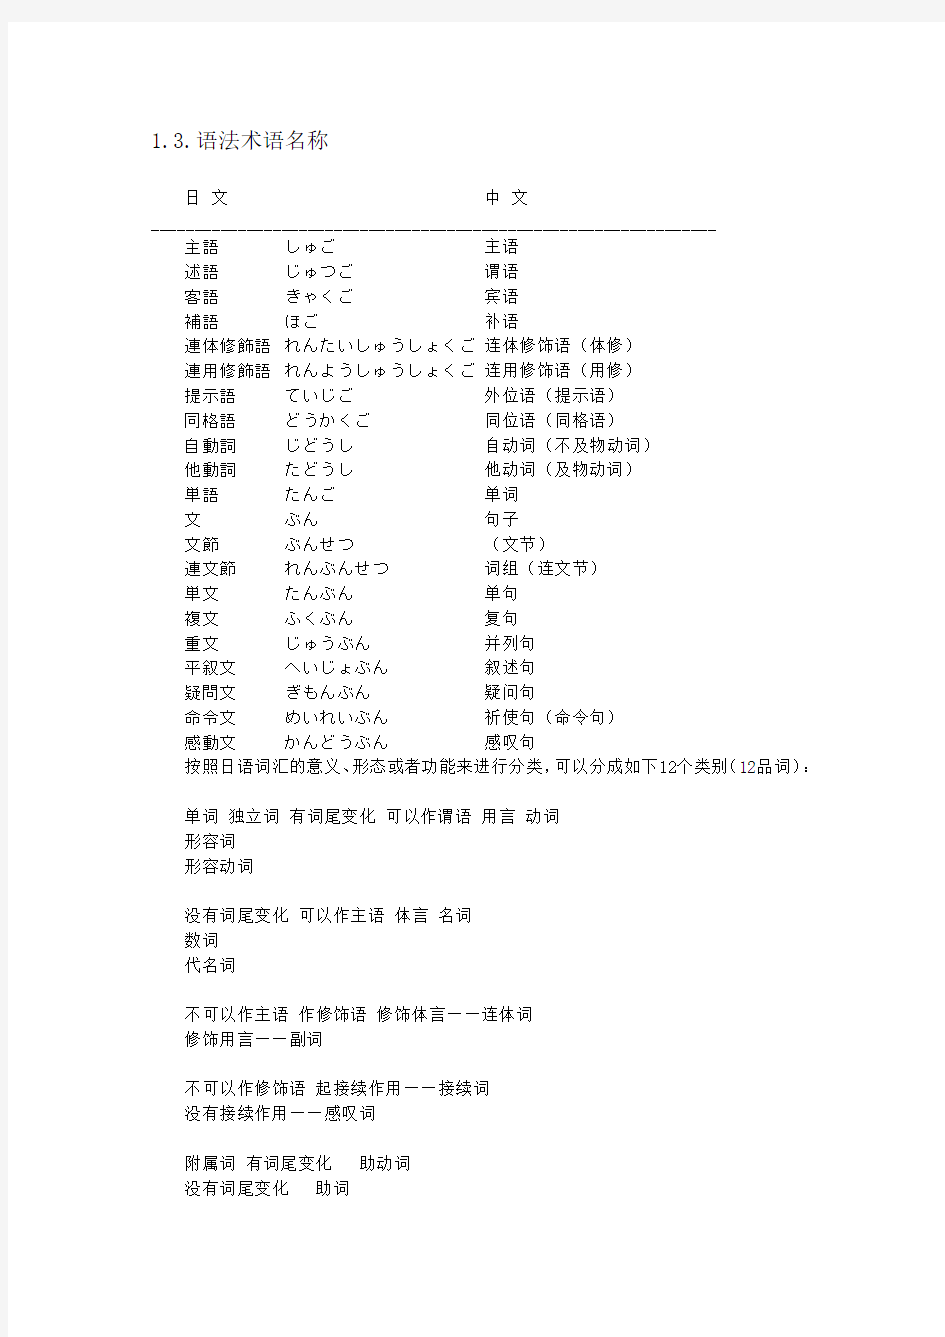 标准日本语 复习课 日常归纳